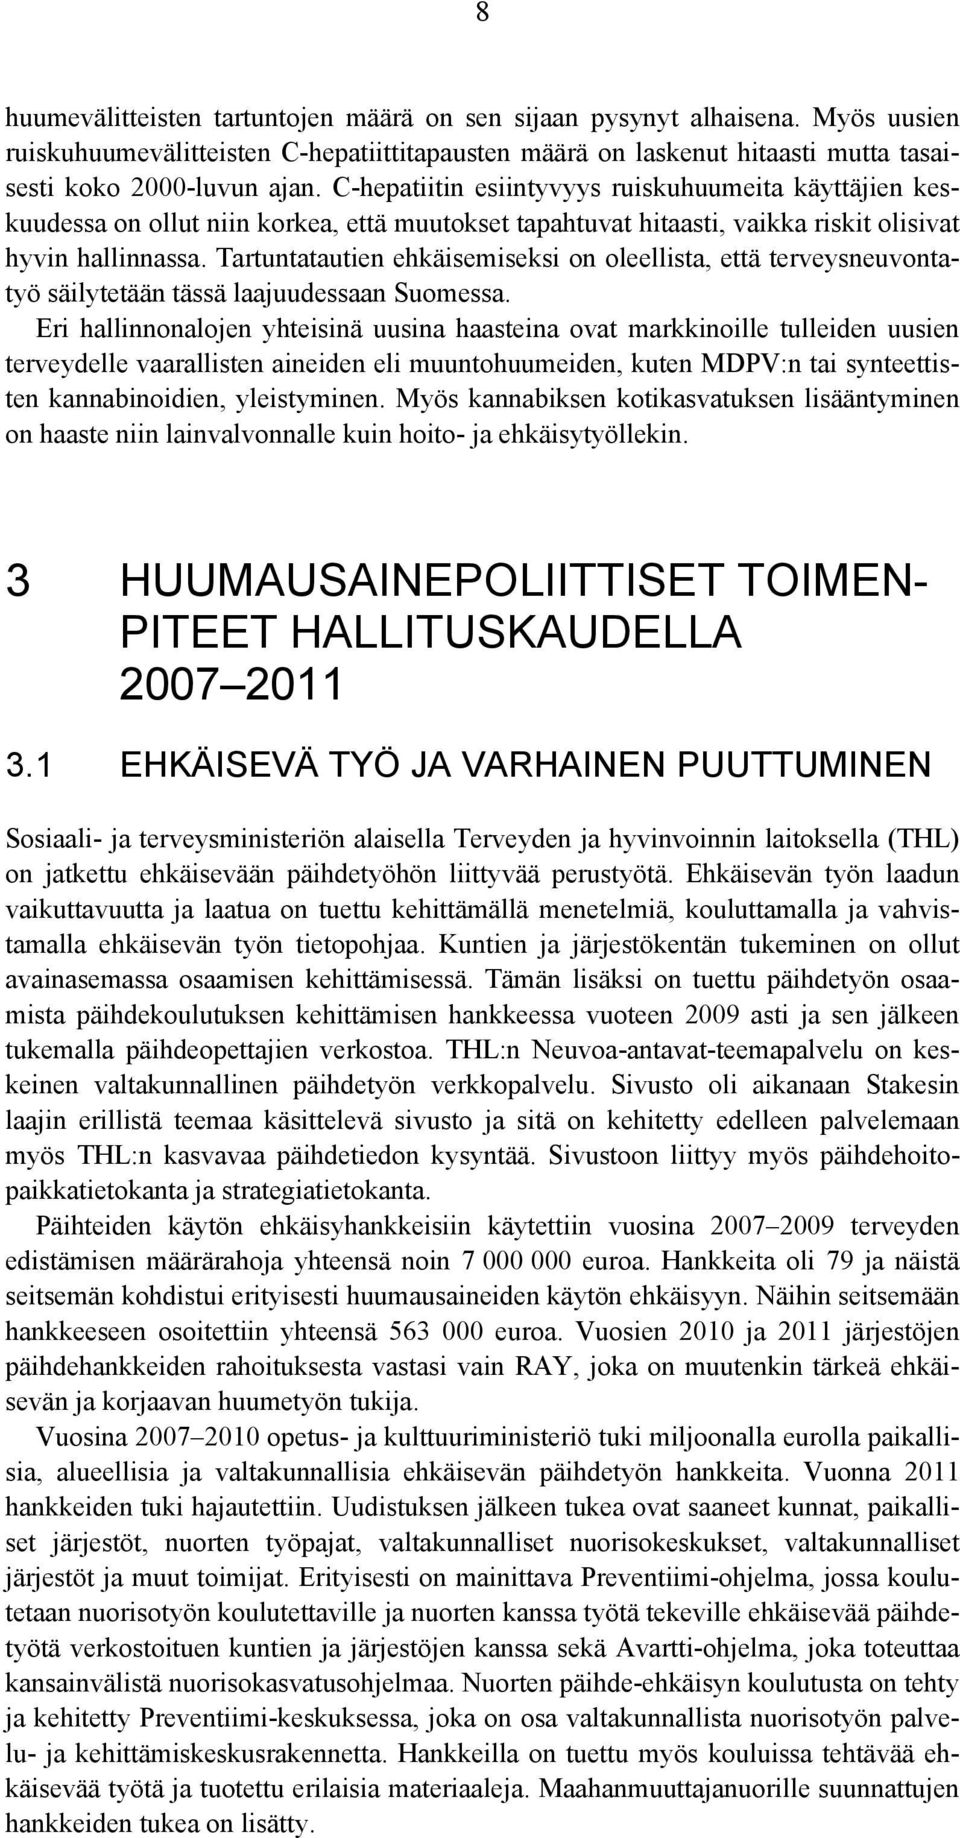 Tartuntatautien ehkäisemiseksi on oleellista, että terveysneuvontatyö säilytetään tässä laajuudessaan Suomessa.